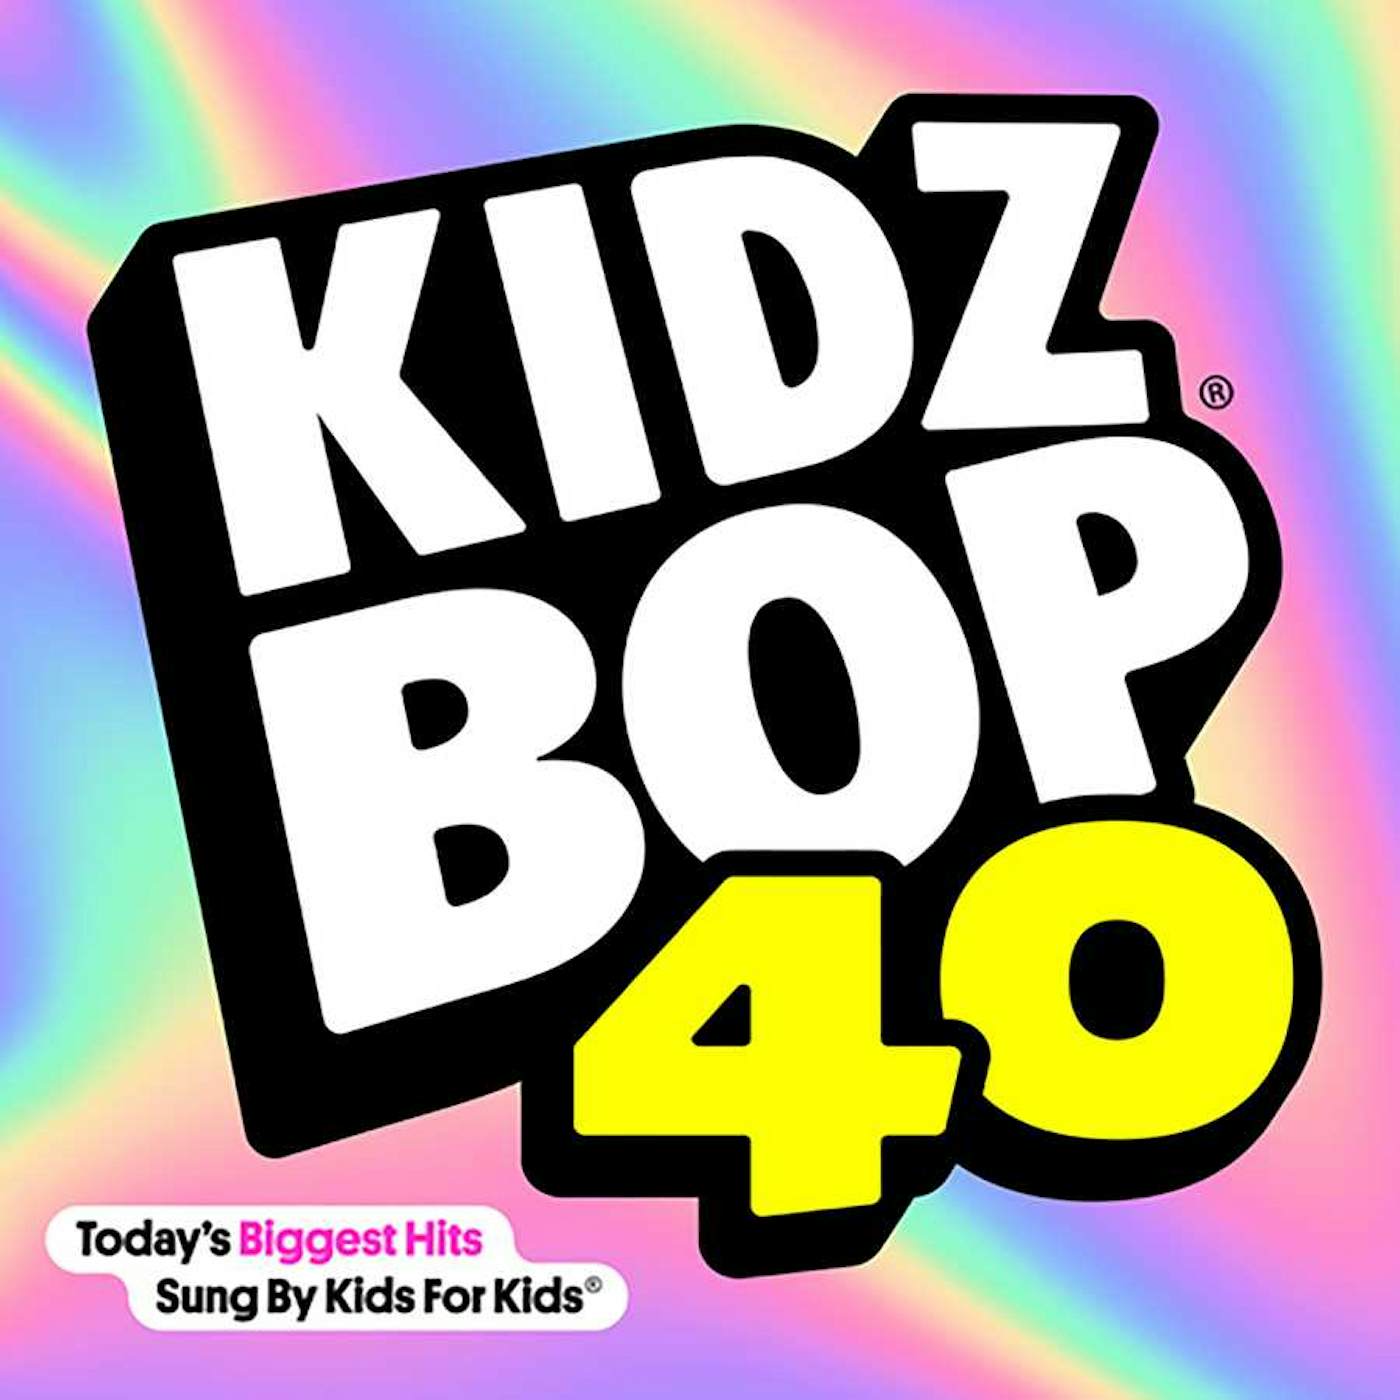 KIDZ BOP 40 CD